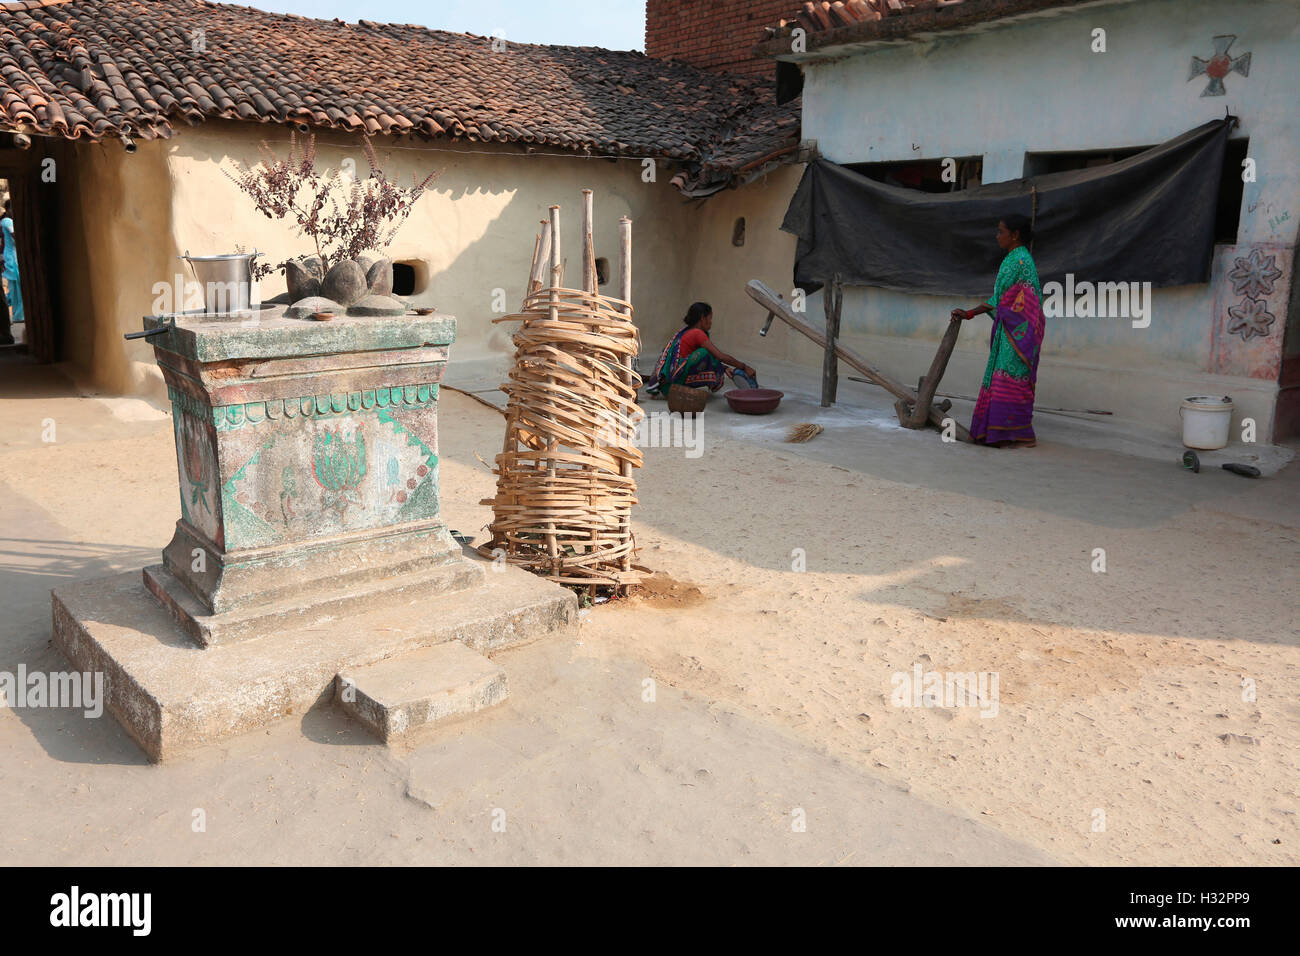 House courtyard, SAWAR TRIBE, Diwanpali Village, Saraipali Panchayat, Mahasamund Block, Chattisgadh, India Stock Photo